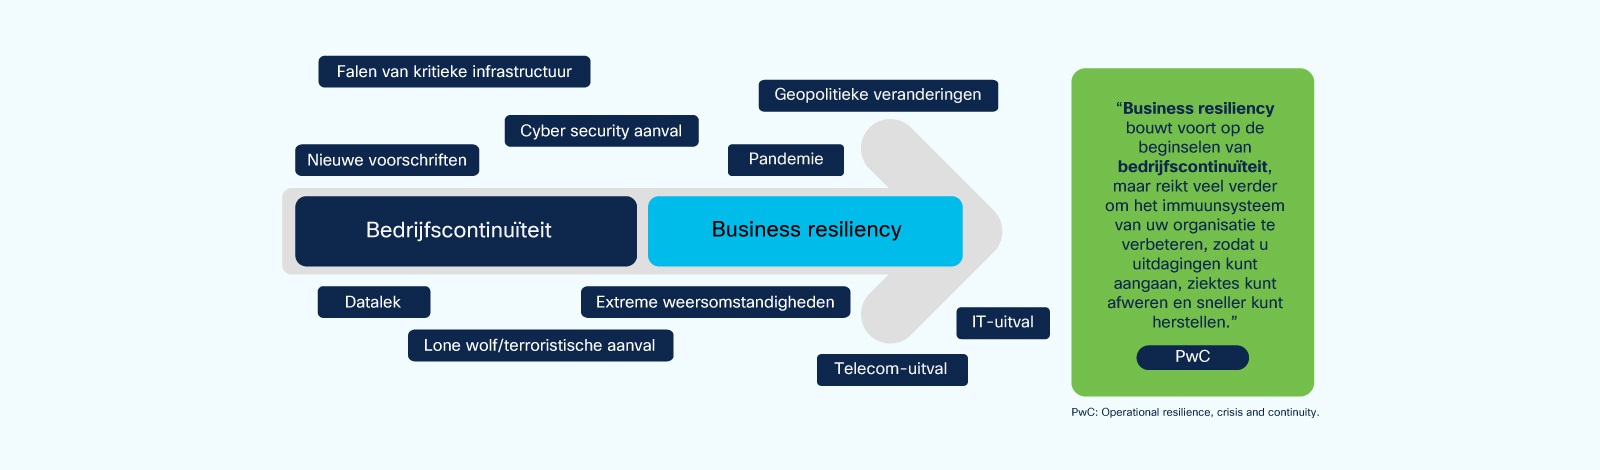 Afbeelding 1. Van bedrijfscontinuïteit naar business resiliency 